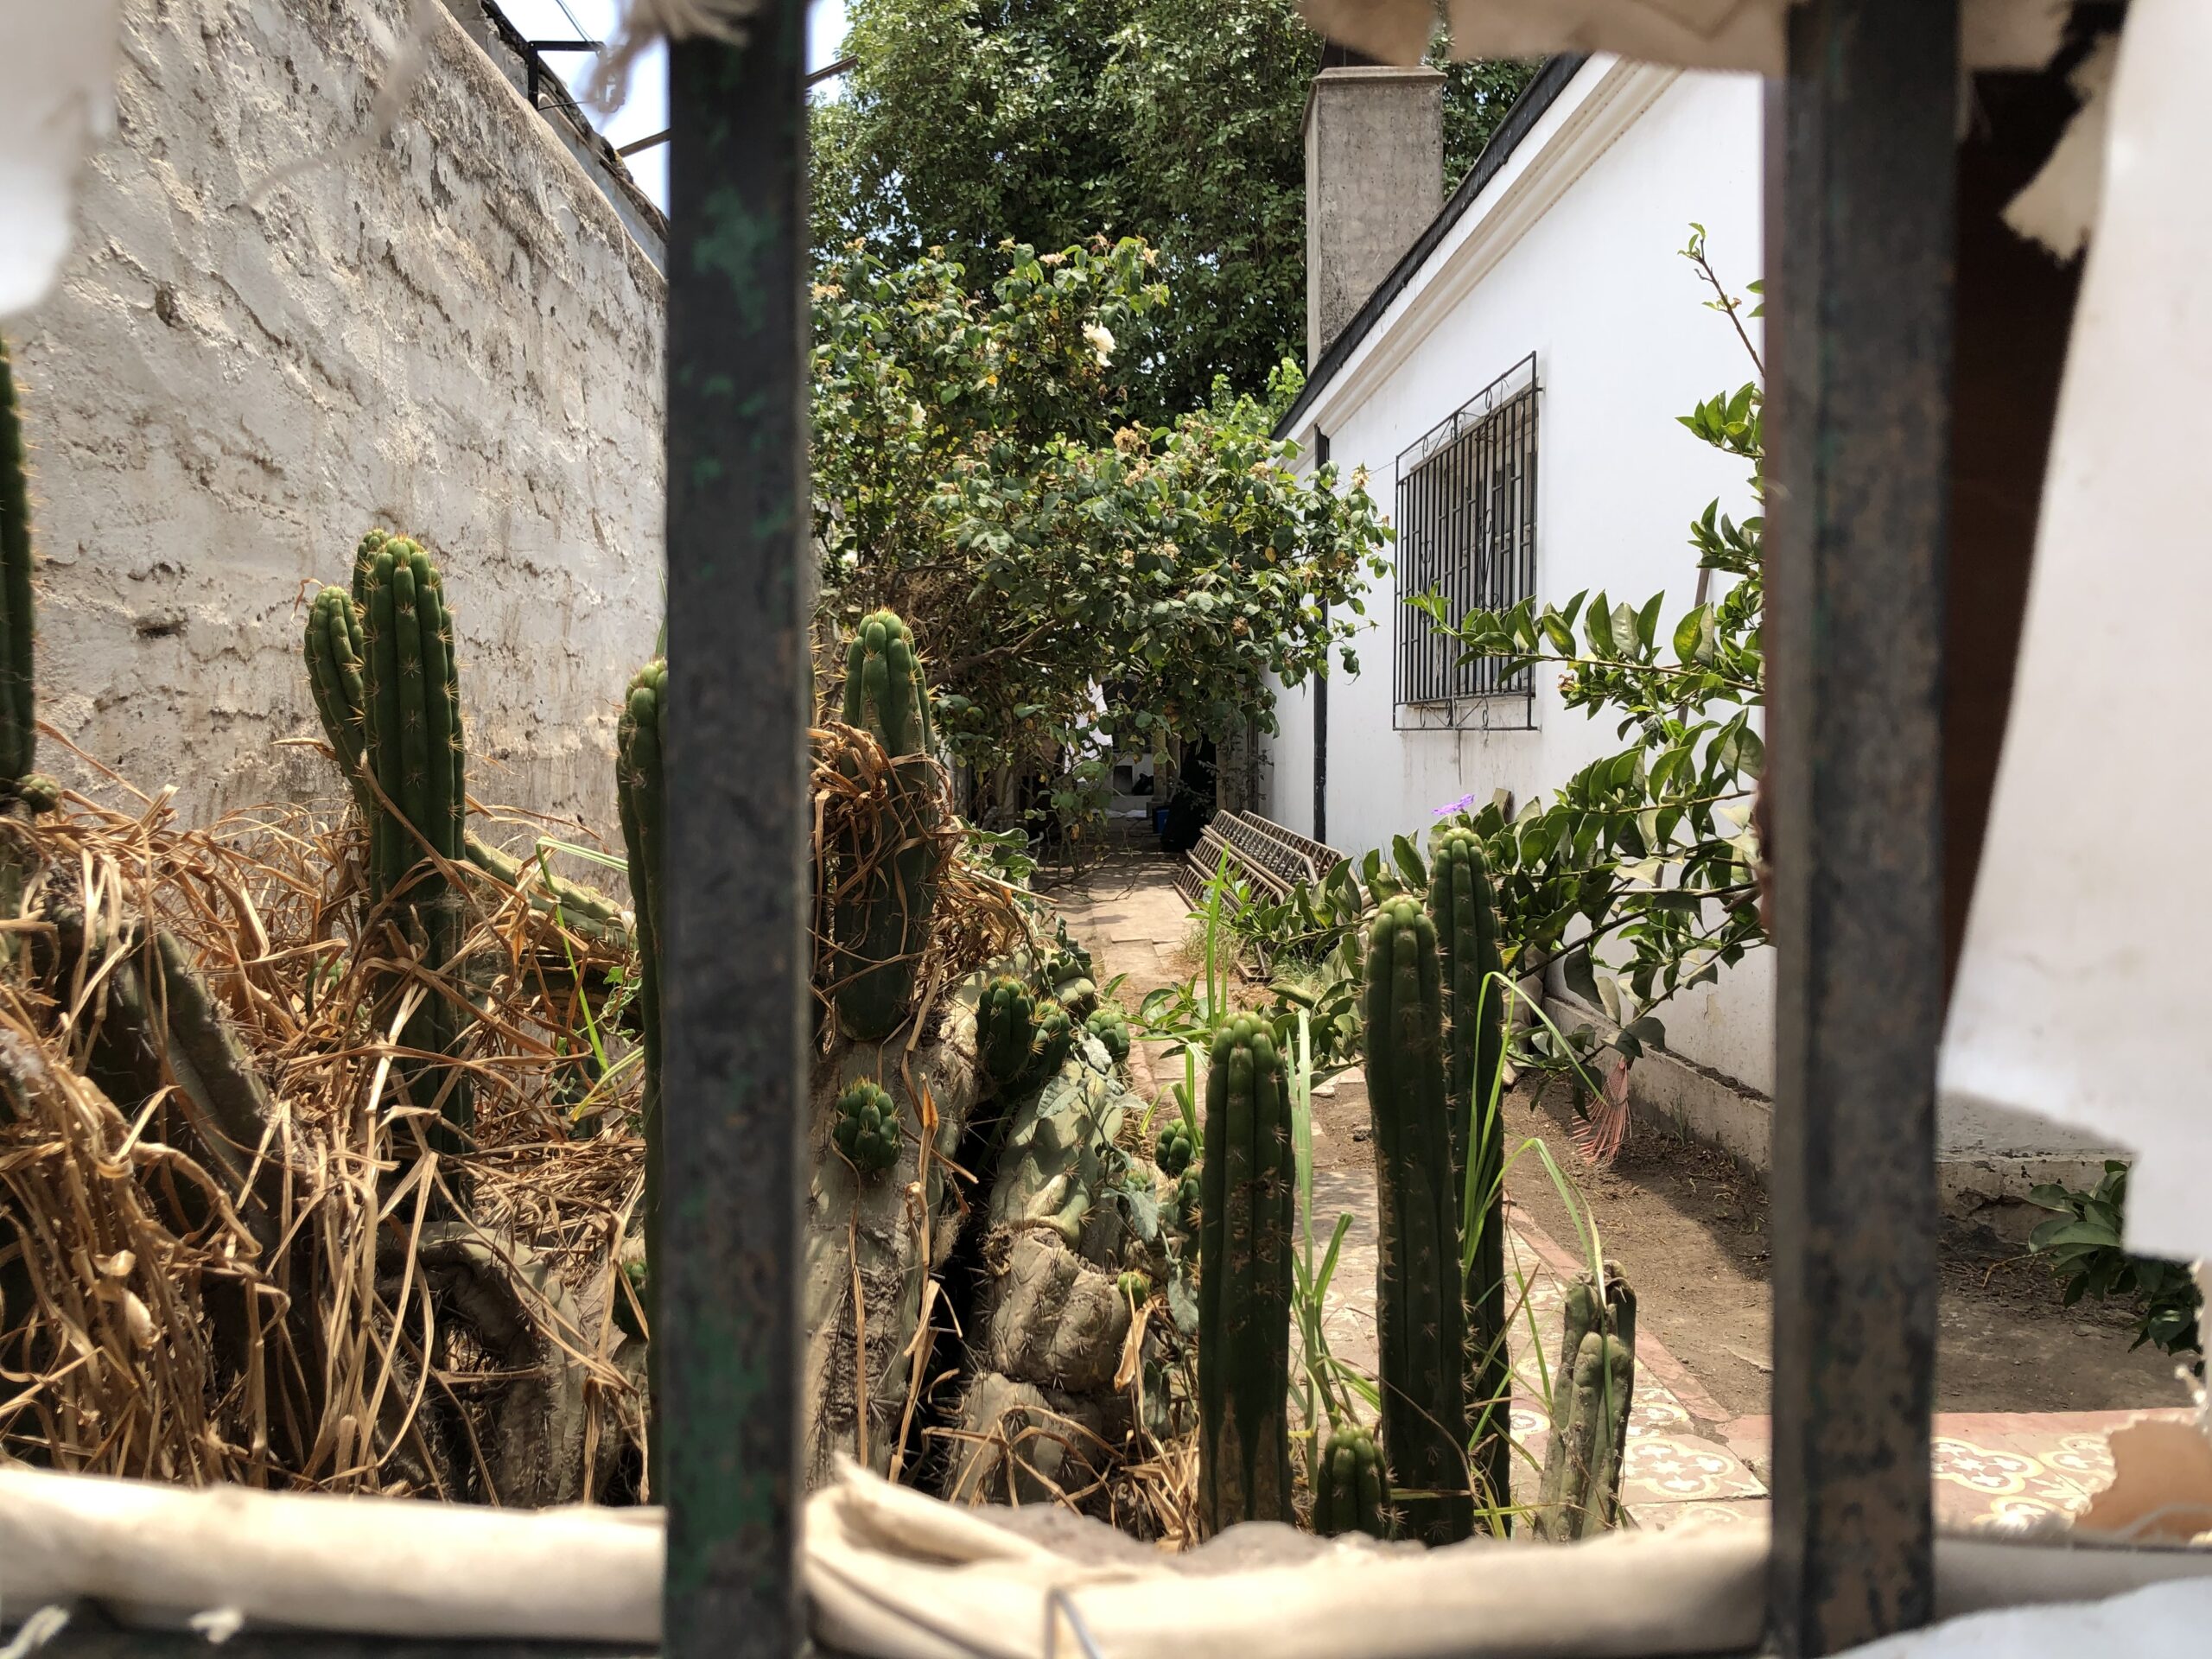 Frontis de la vivienda en la que se ubica la bodega donde fue encontrada Fernanda Maciel. Fotos: Brenda Martínez.